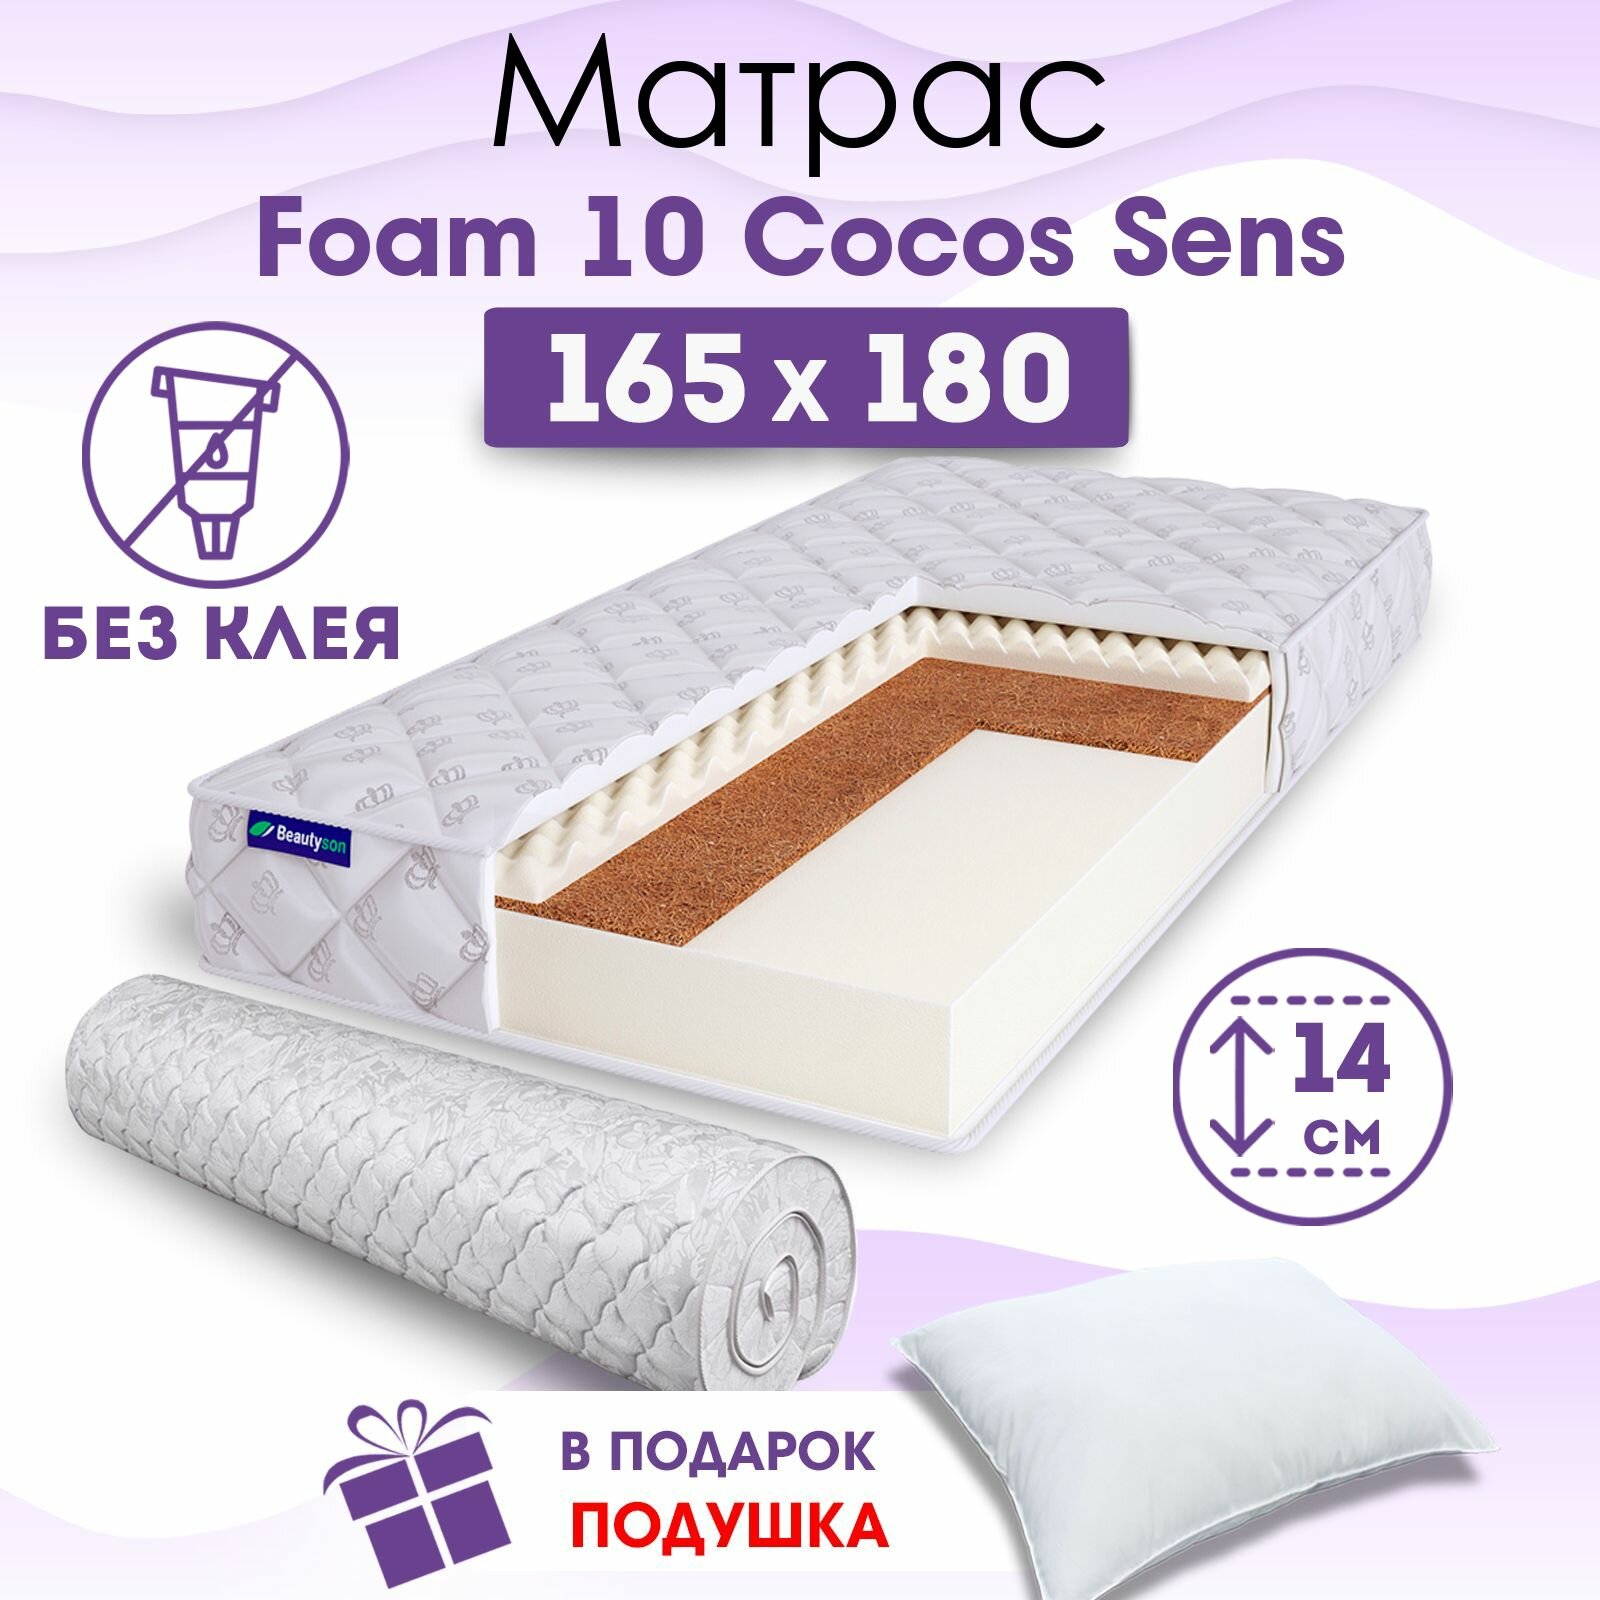 Ортопедический матрас Beautyson Foam 10 Cocos Sens без клея, 165х180, 14 см, беспружинный, двухспальный, на кровать, для дивана, умеренно мягкий